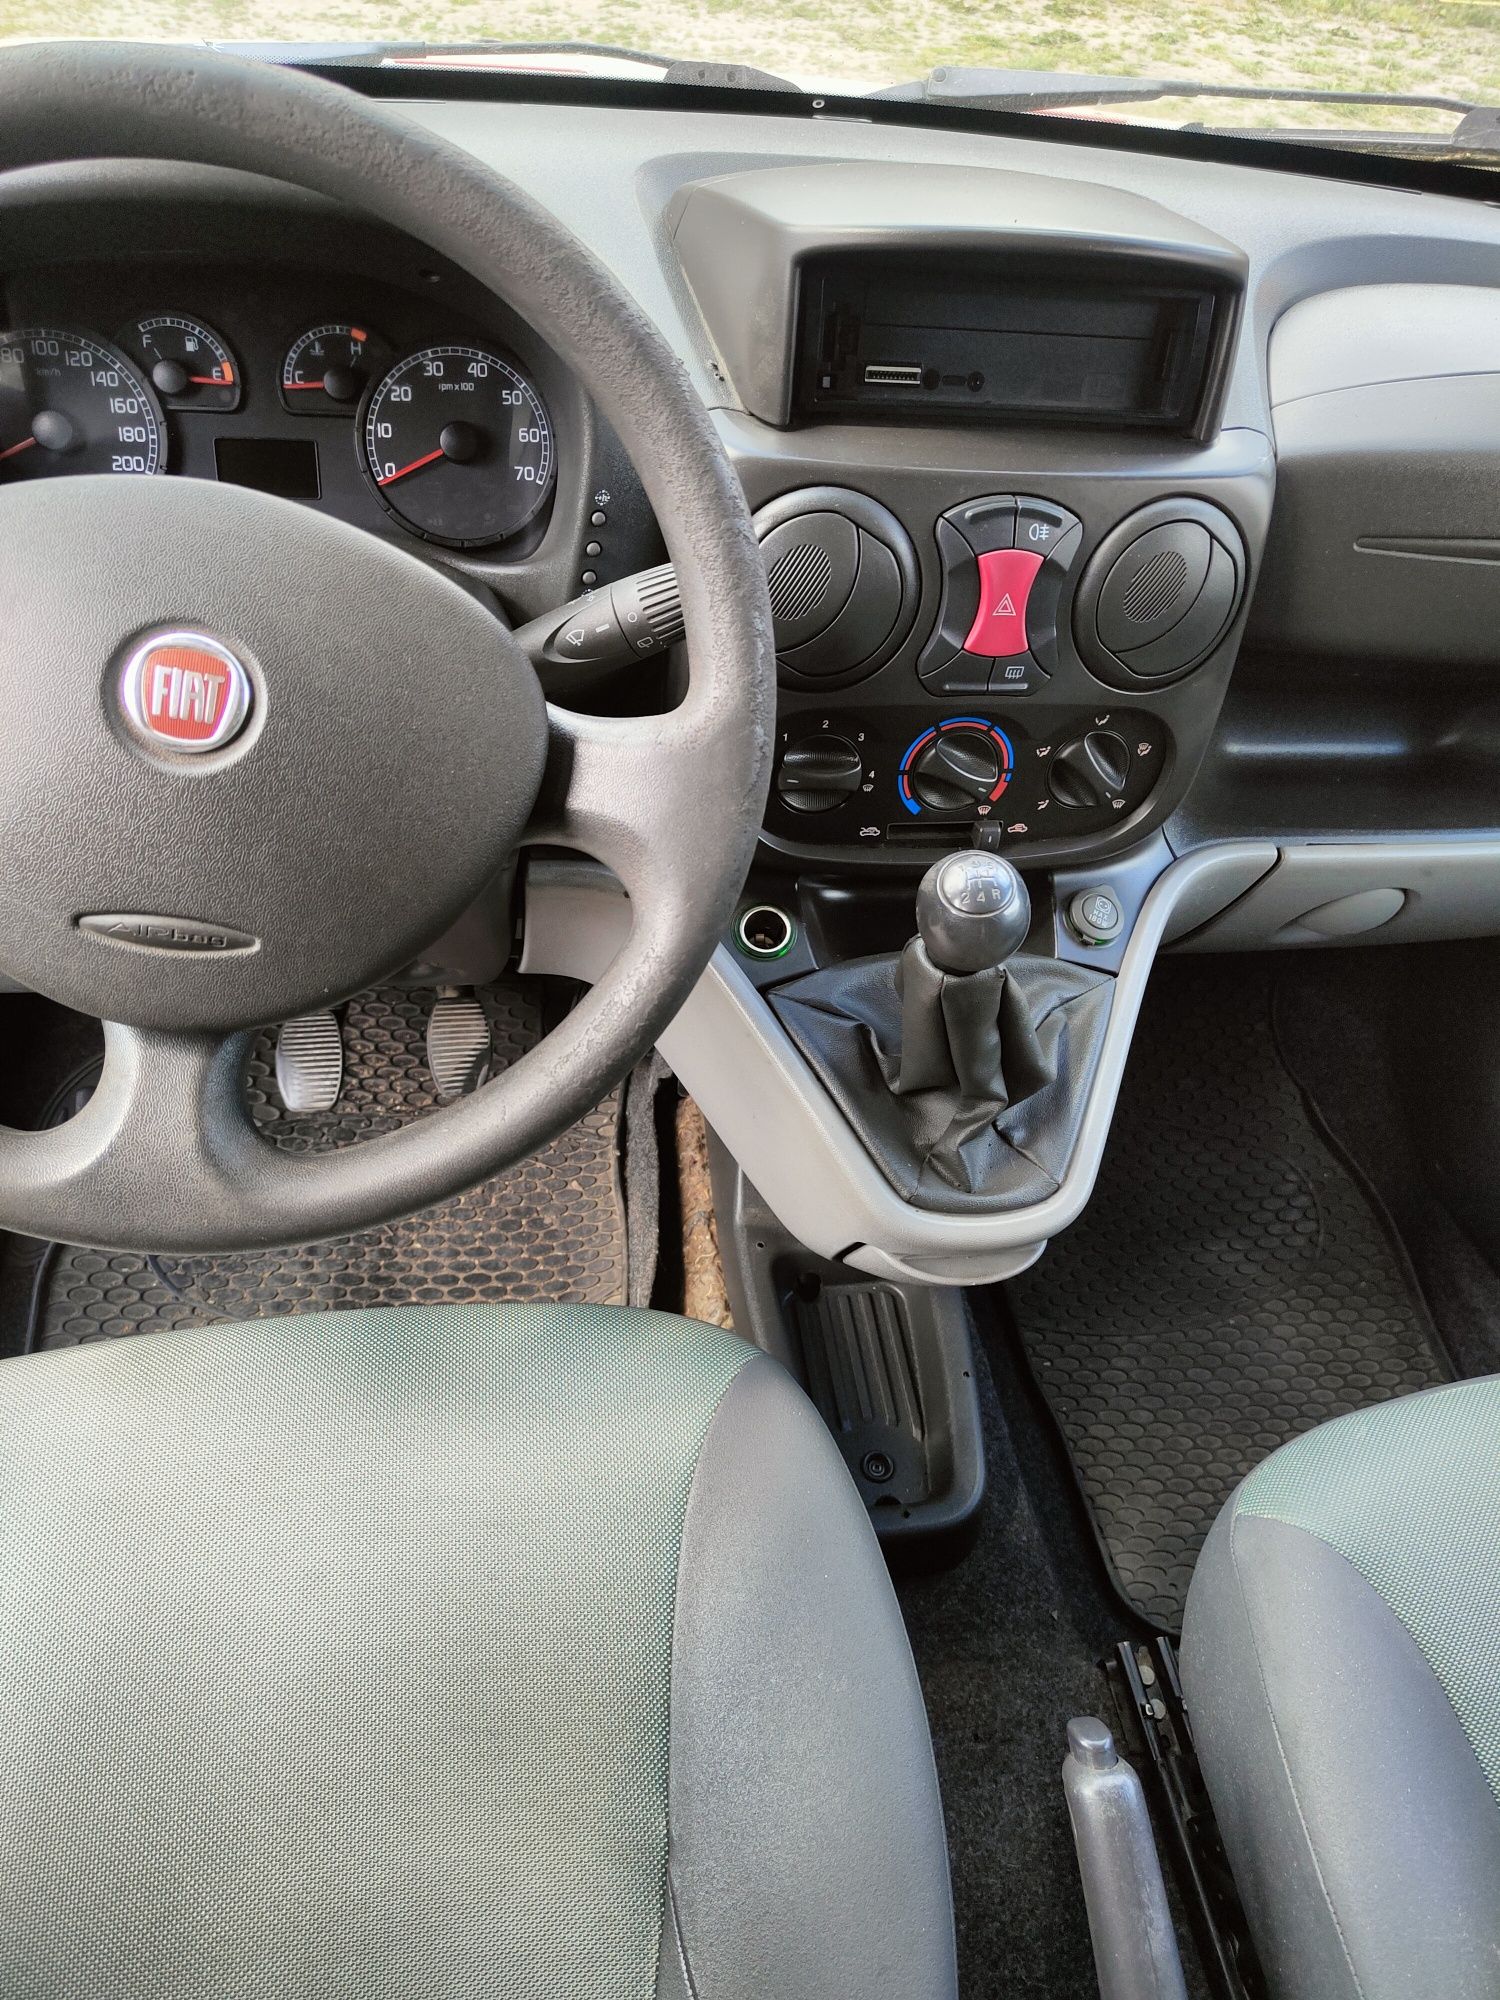 Fiat Doblo 2009 rok 1,3 multijet sprowadzony